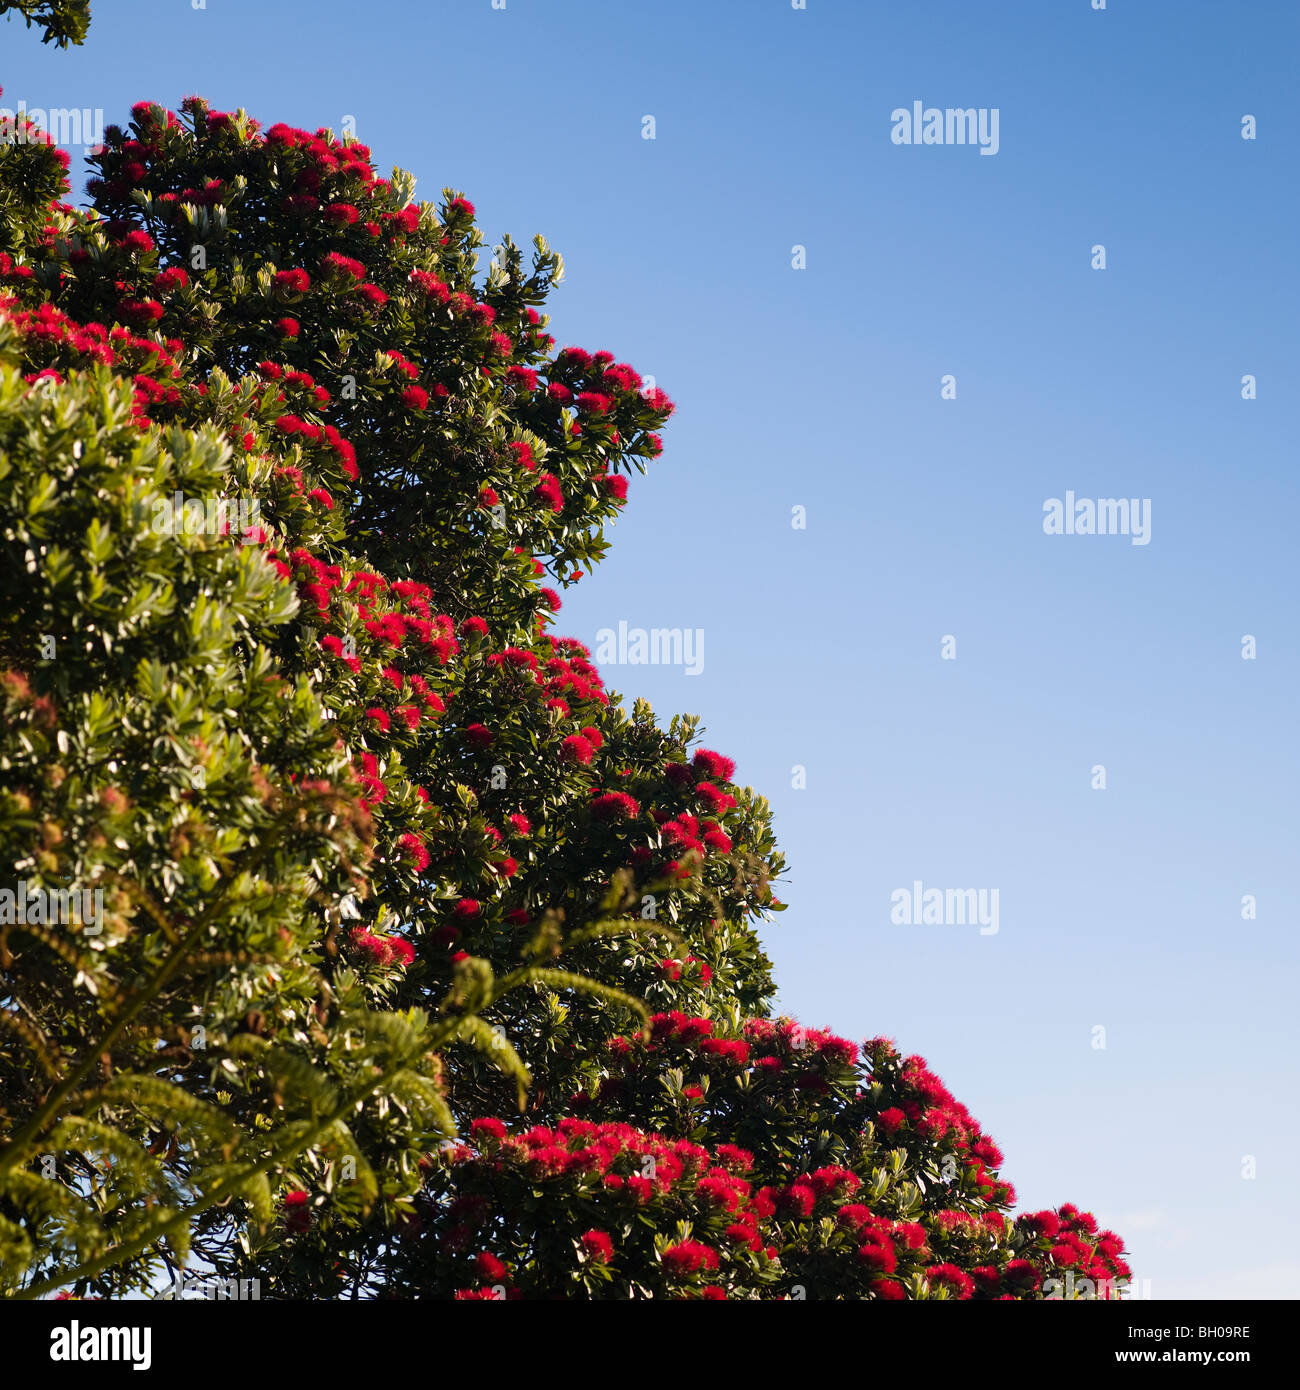 Pohutukawa tree, native to New Zealand, often refereed to as the Christmas tree of New Zealand Stock Photo